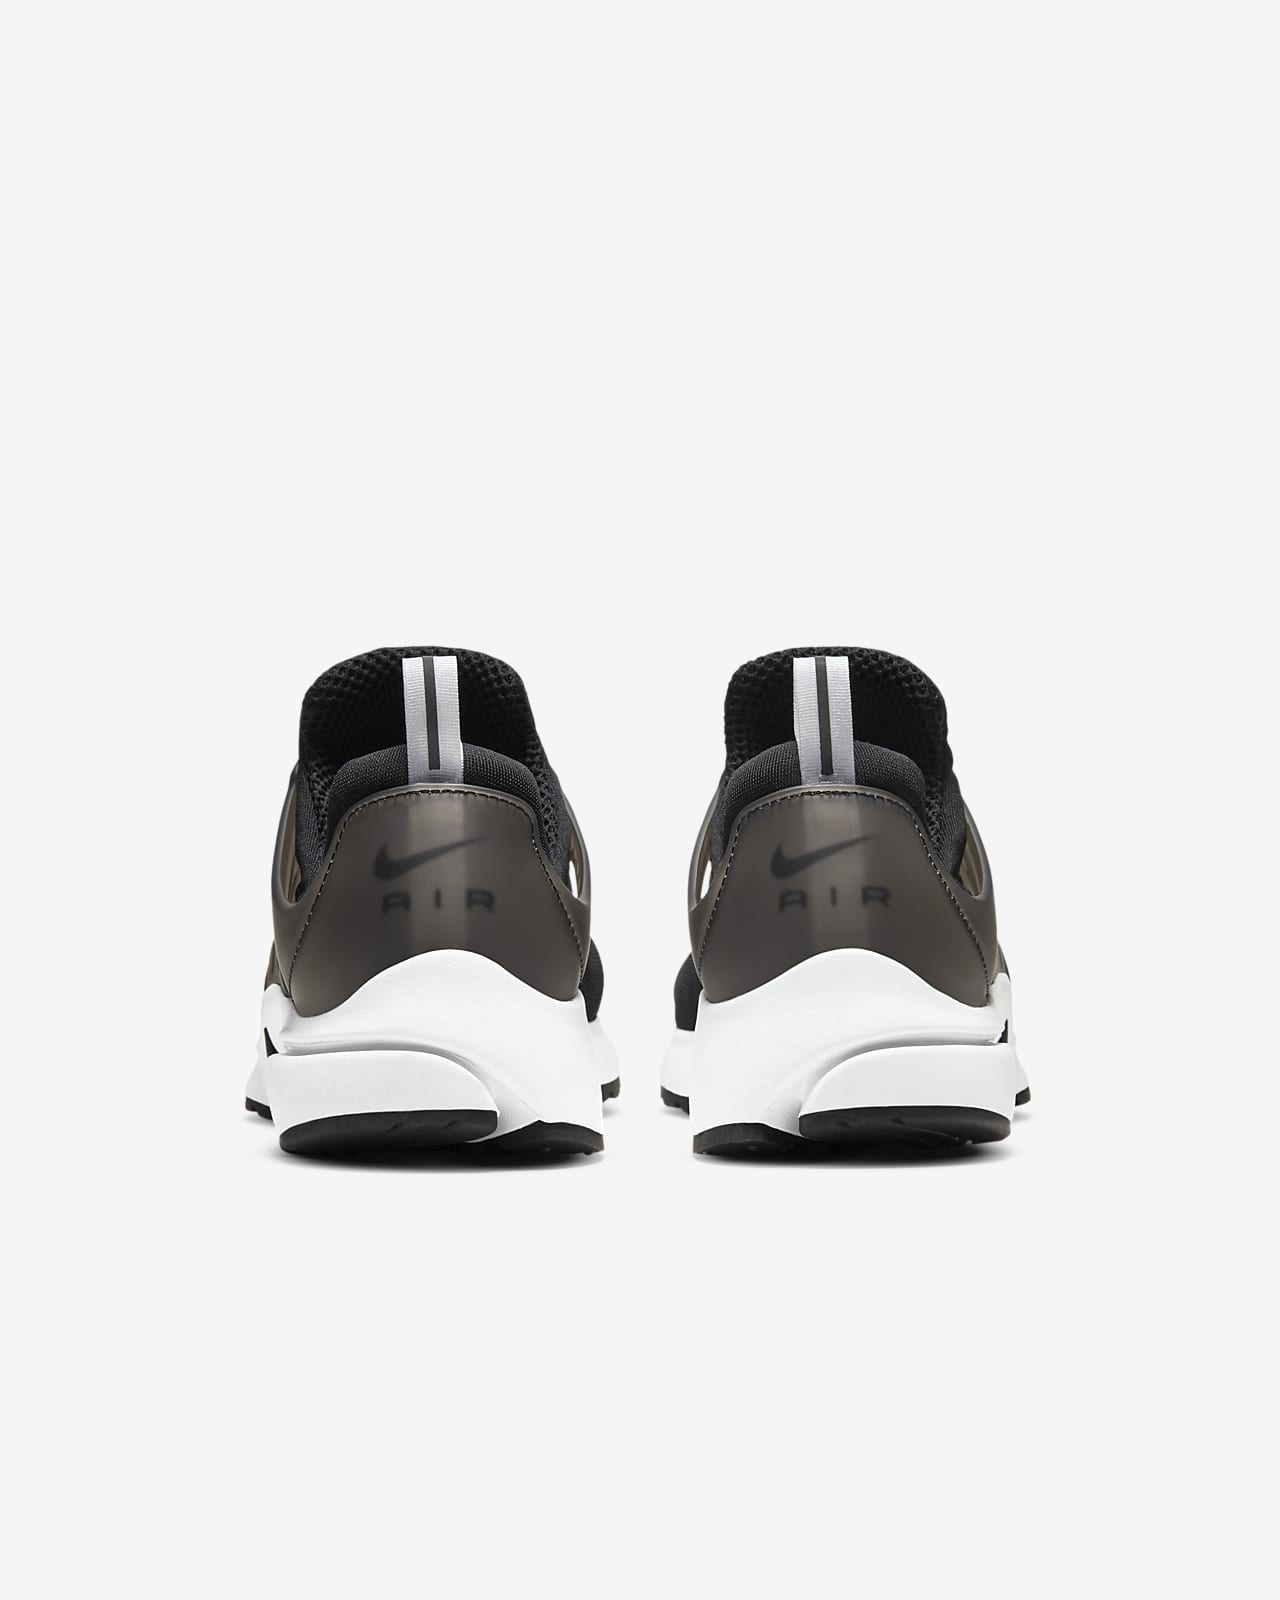 Cita traición obtener Nike Air Presto Men's Shoes. Nike.com